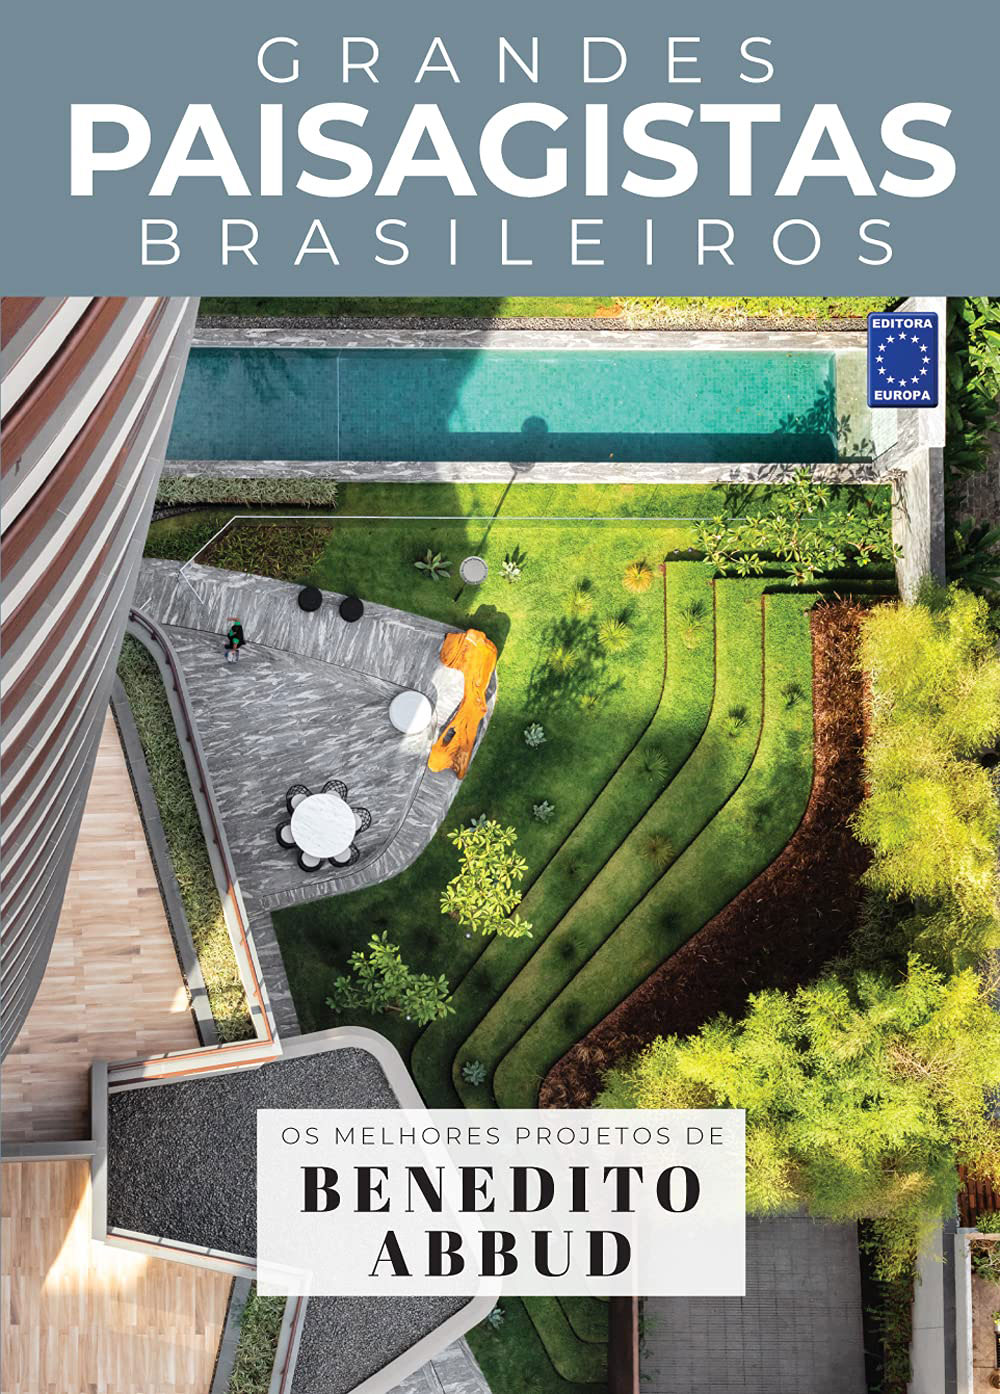 Coleção Grandes Paisagistas Brasileiros - Os Melhores Projetos de Benedito Abbud - Editora Europa